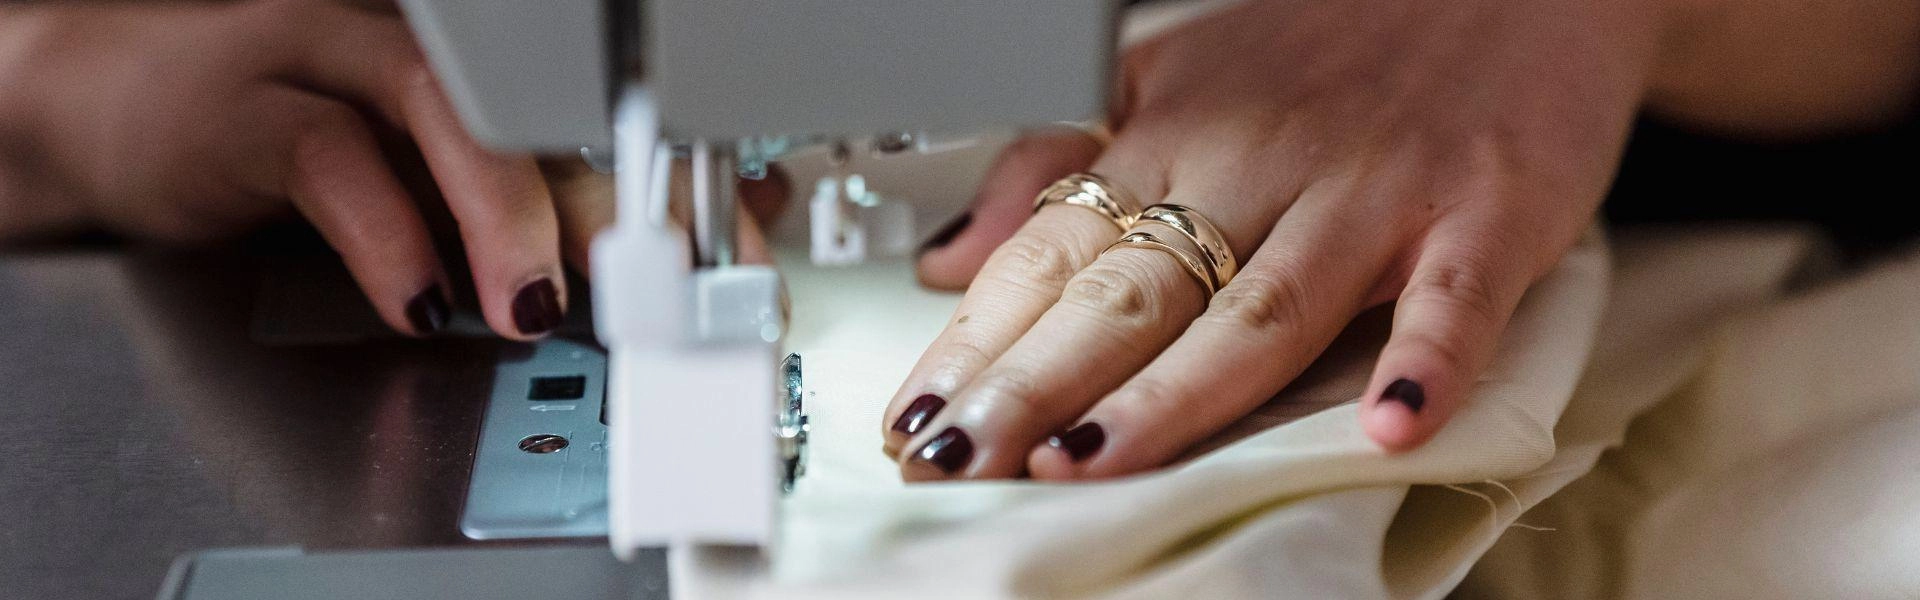 Mãos femininas produzindo uma peça de roupa com o auxílio de uma máquina de costura.